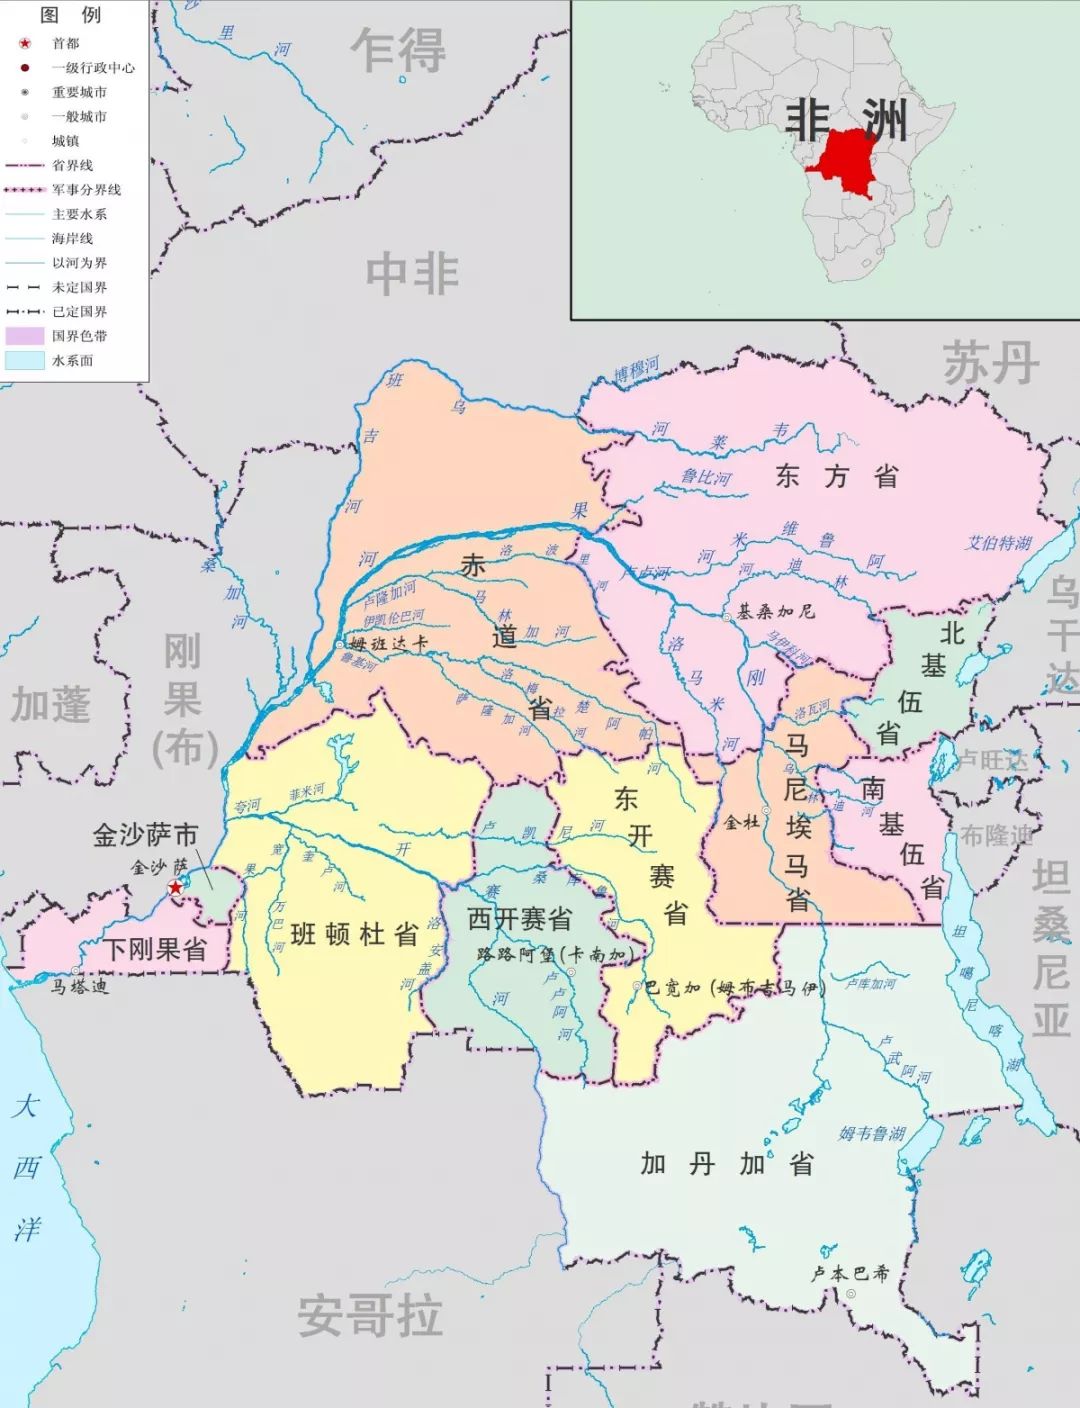 疫情复杂危险,刚果(金)的中国矿企还好吗?